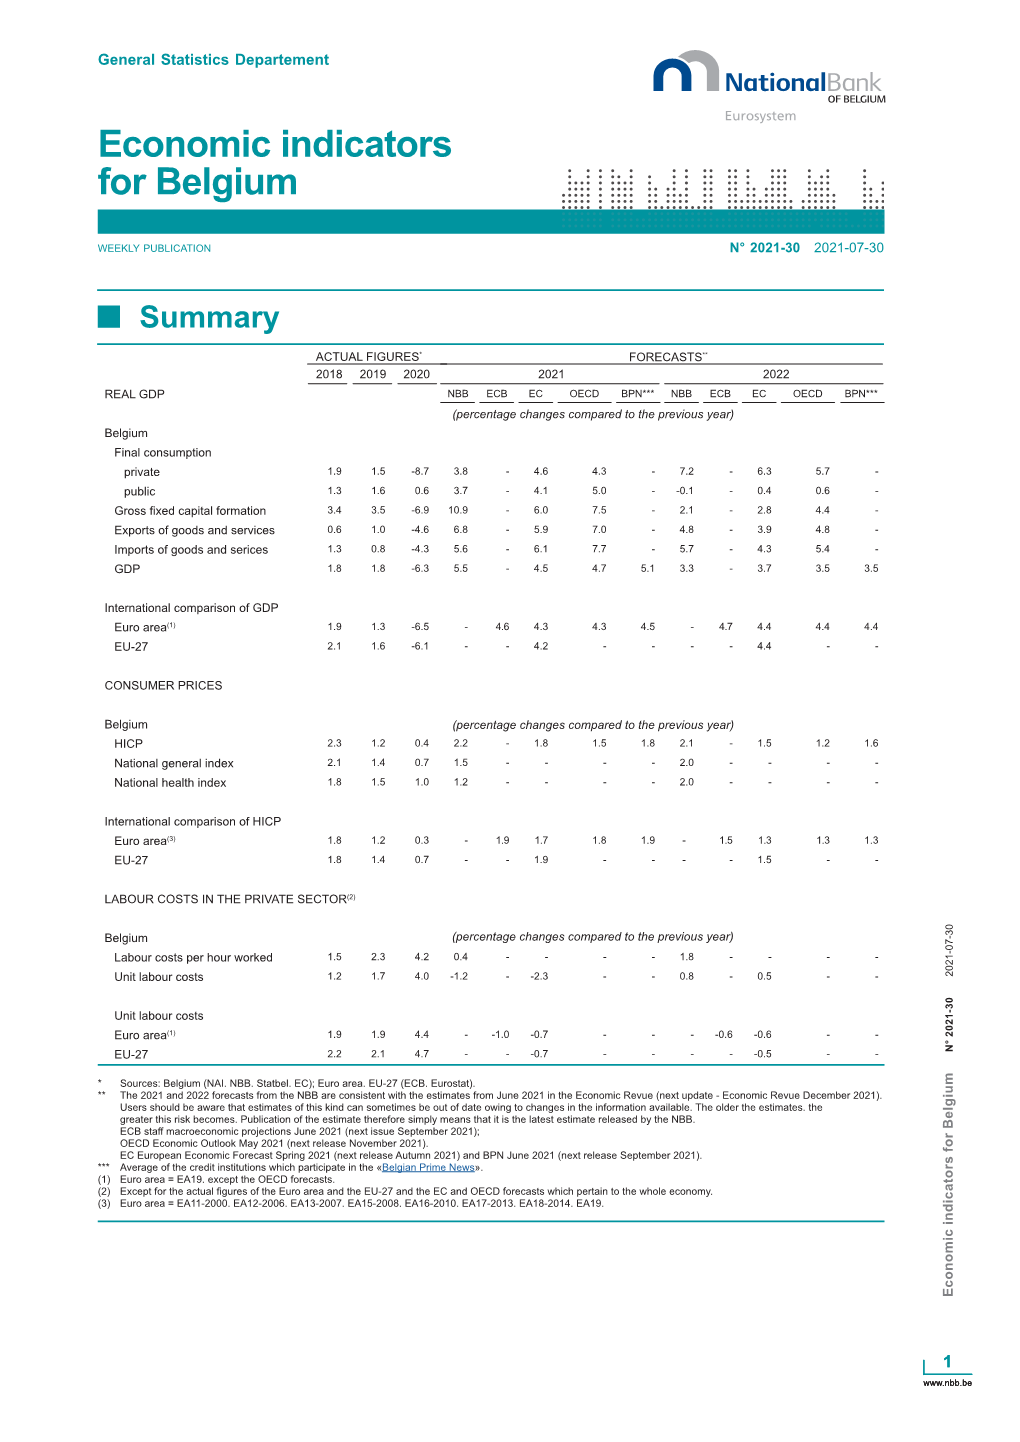 Economic Indicators for Belgium (2021-30)PDF